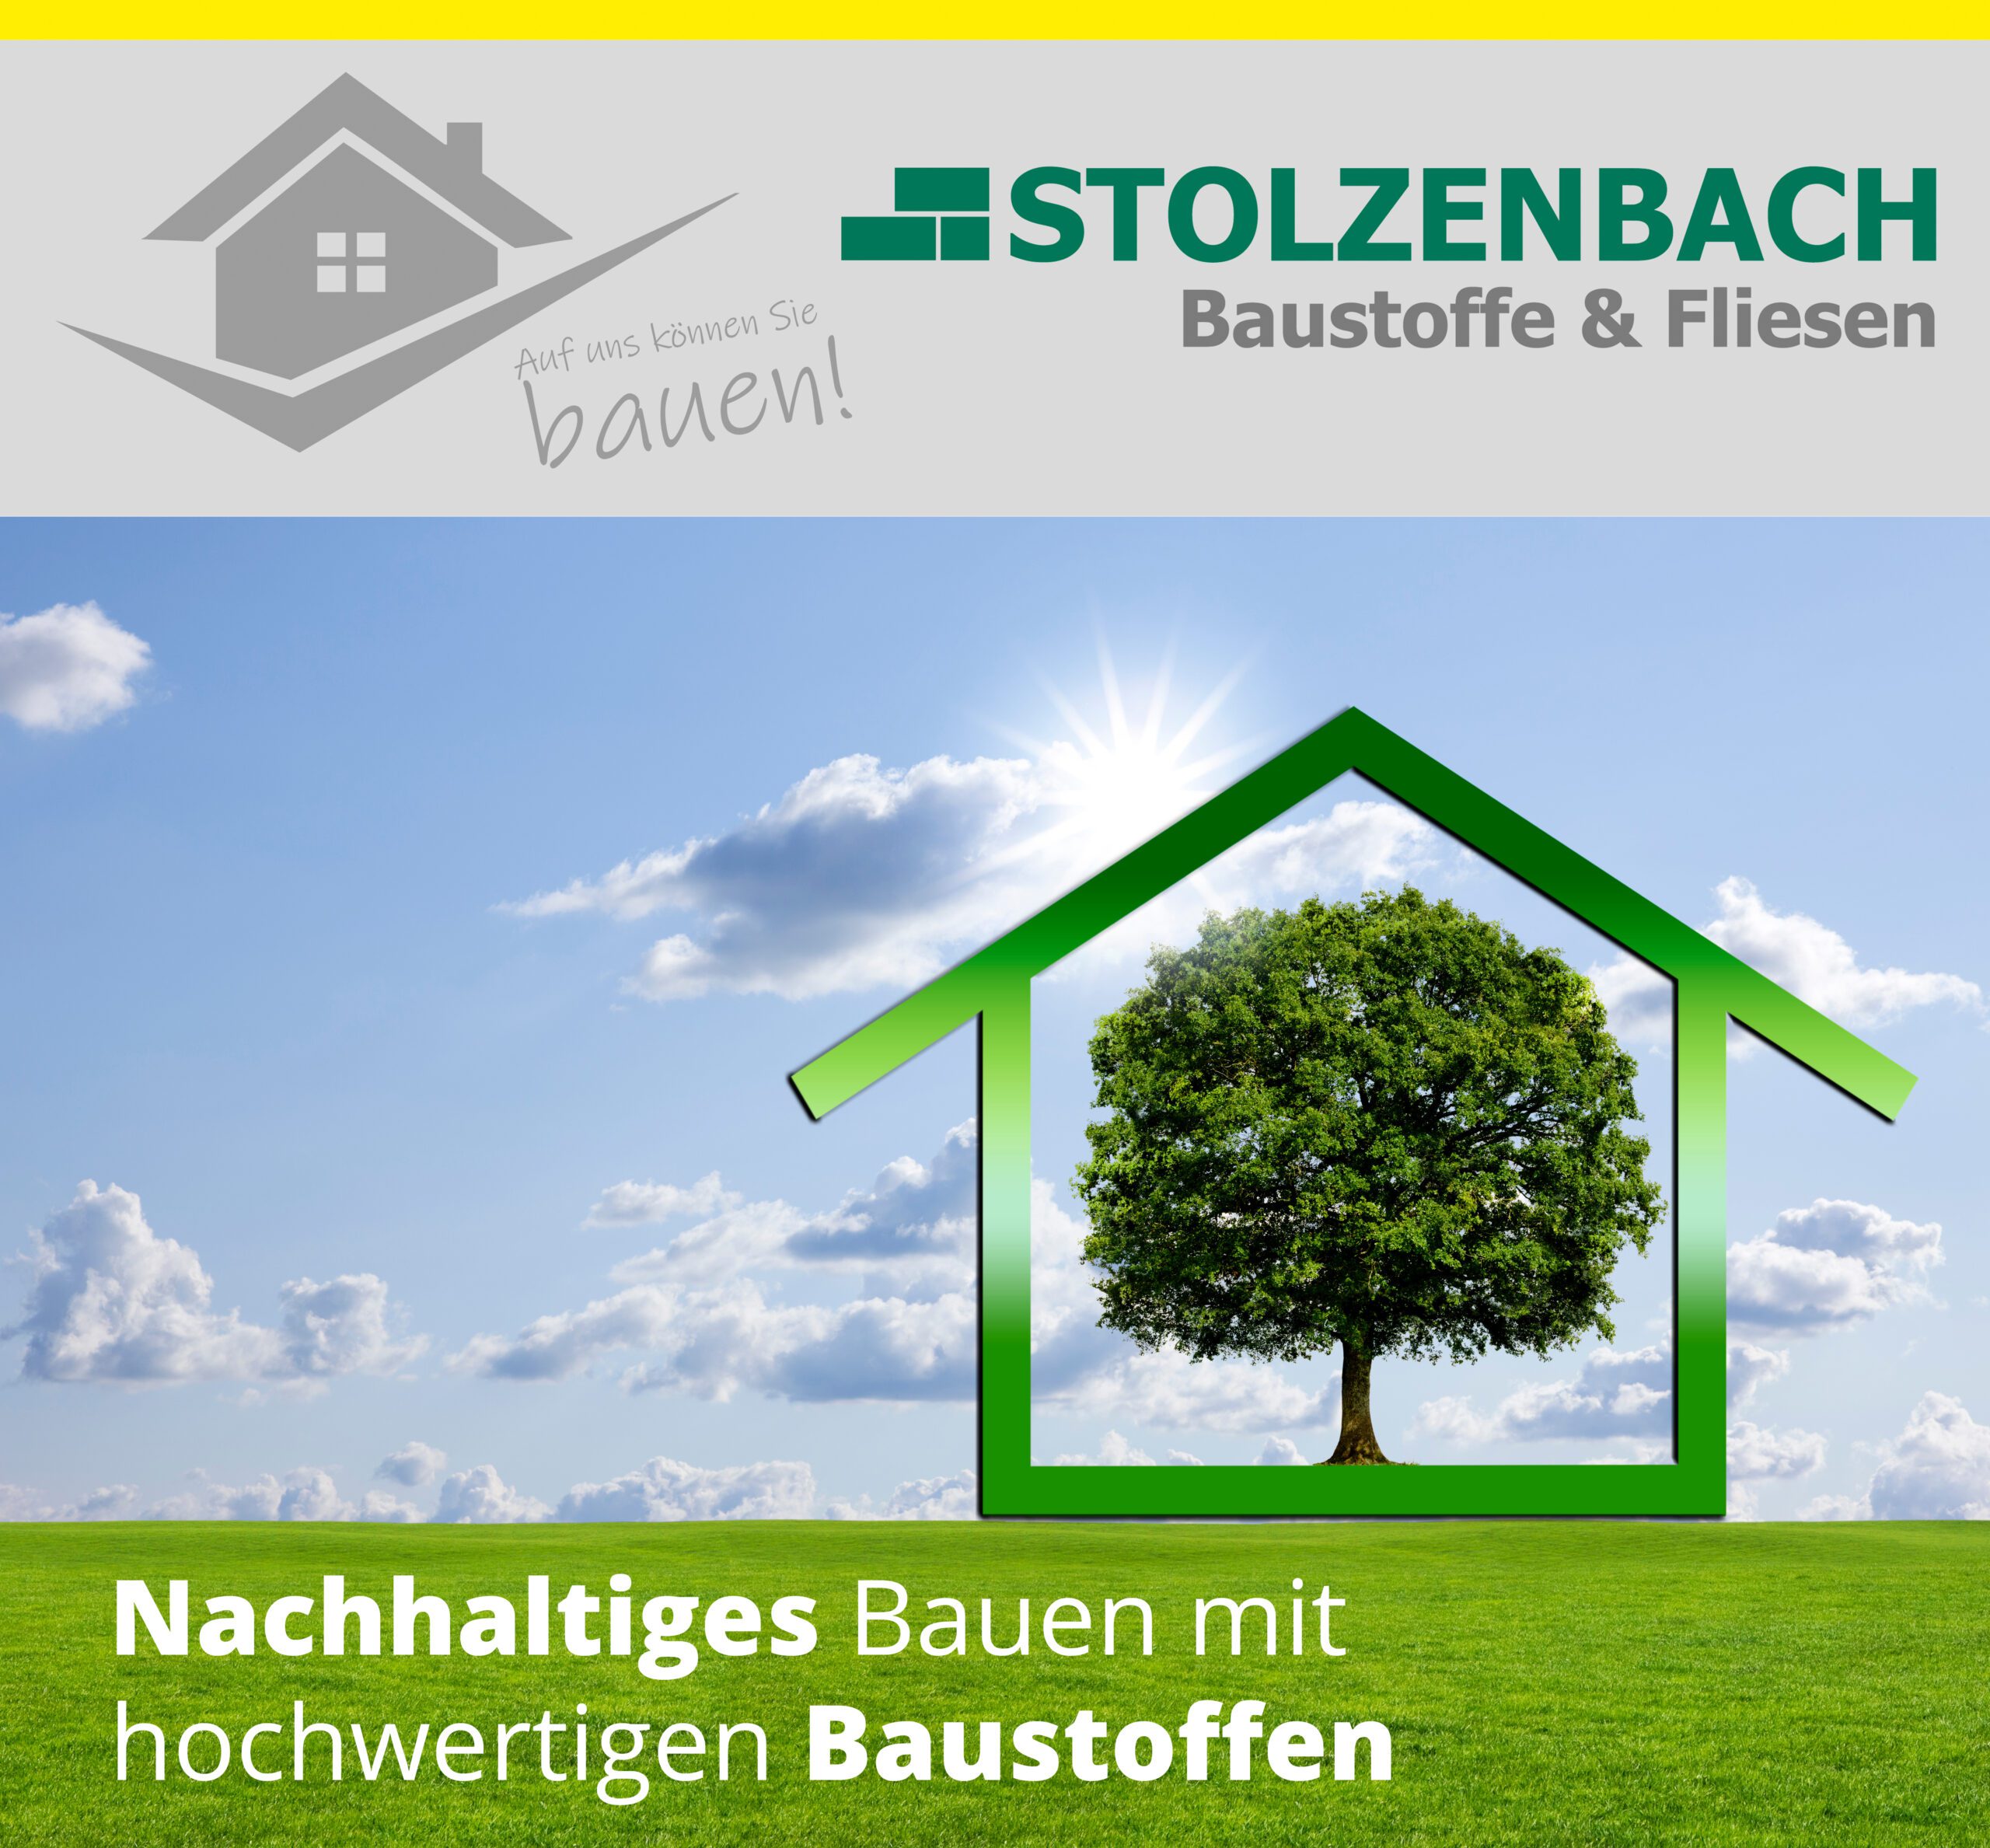 Nachhaltiges bauen mit Baustoffen von Stolzenbach Baustoffe